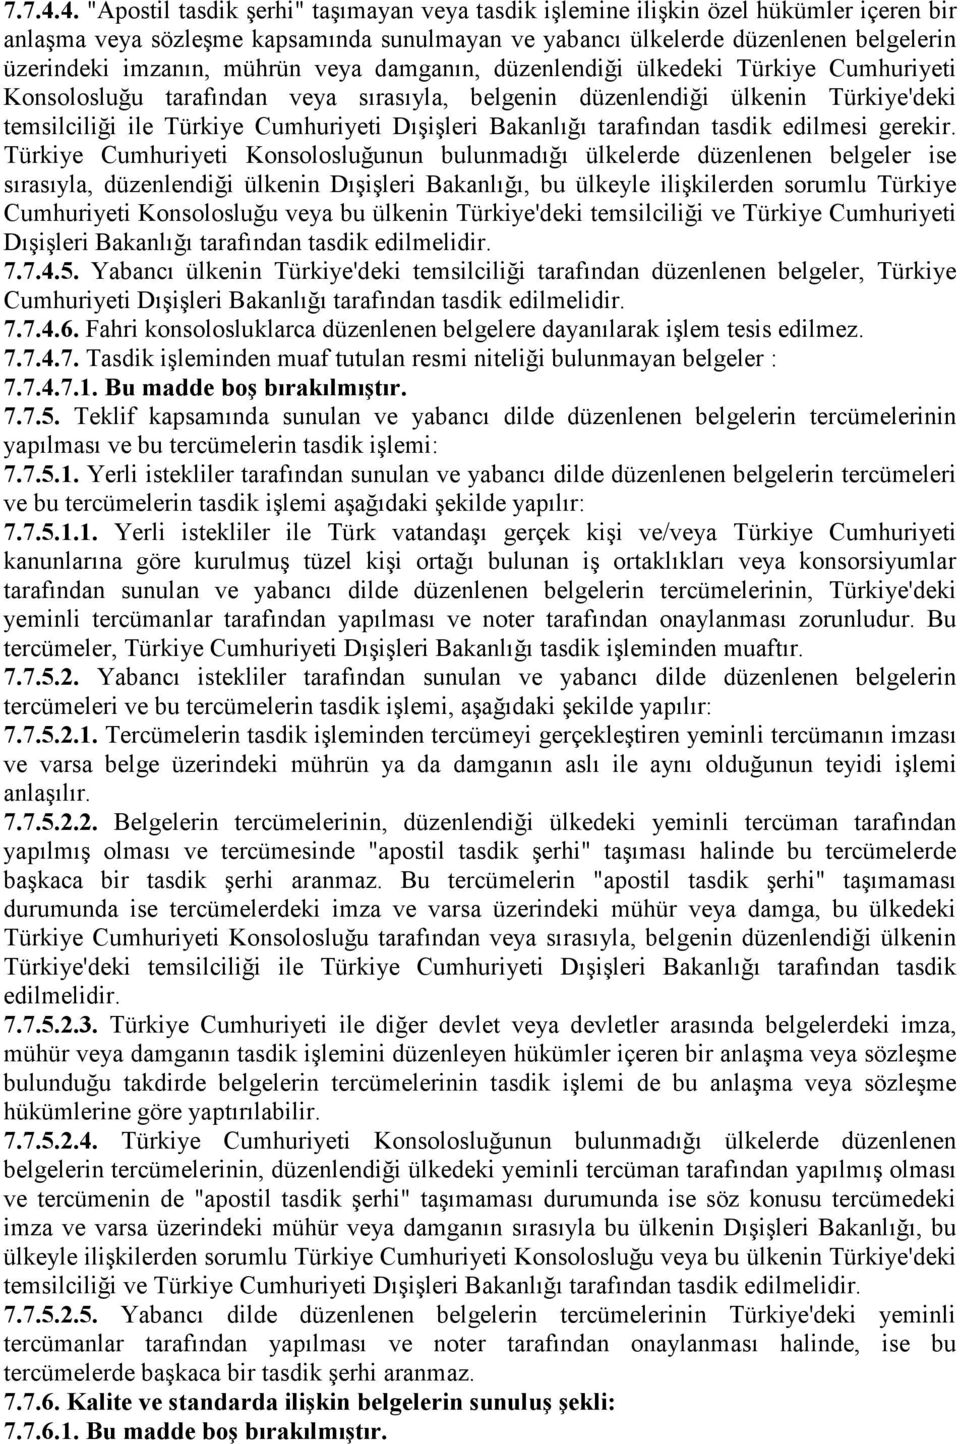 mührün veya damganın, düzenlendiği ülkedeki Türkiye Cumhuriyeti Konsolosluğu tarafından veya sırasıyla, belgenin düzenlendiği ülkenin Türkiye'deki temsilciliği ile Türkiye Cumhuriyeti Dışişleri